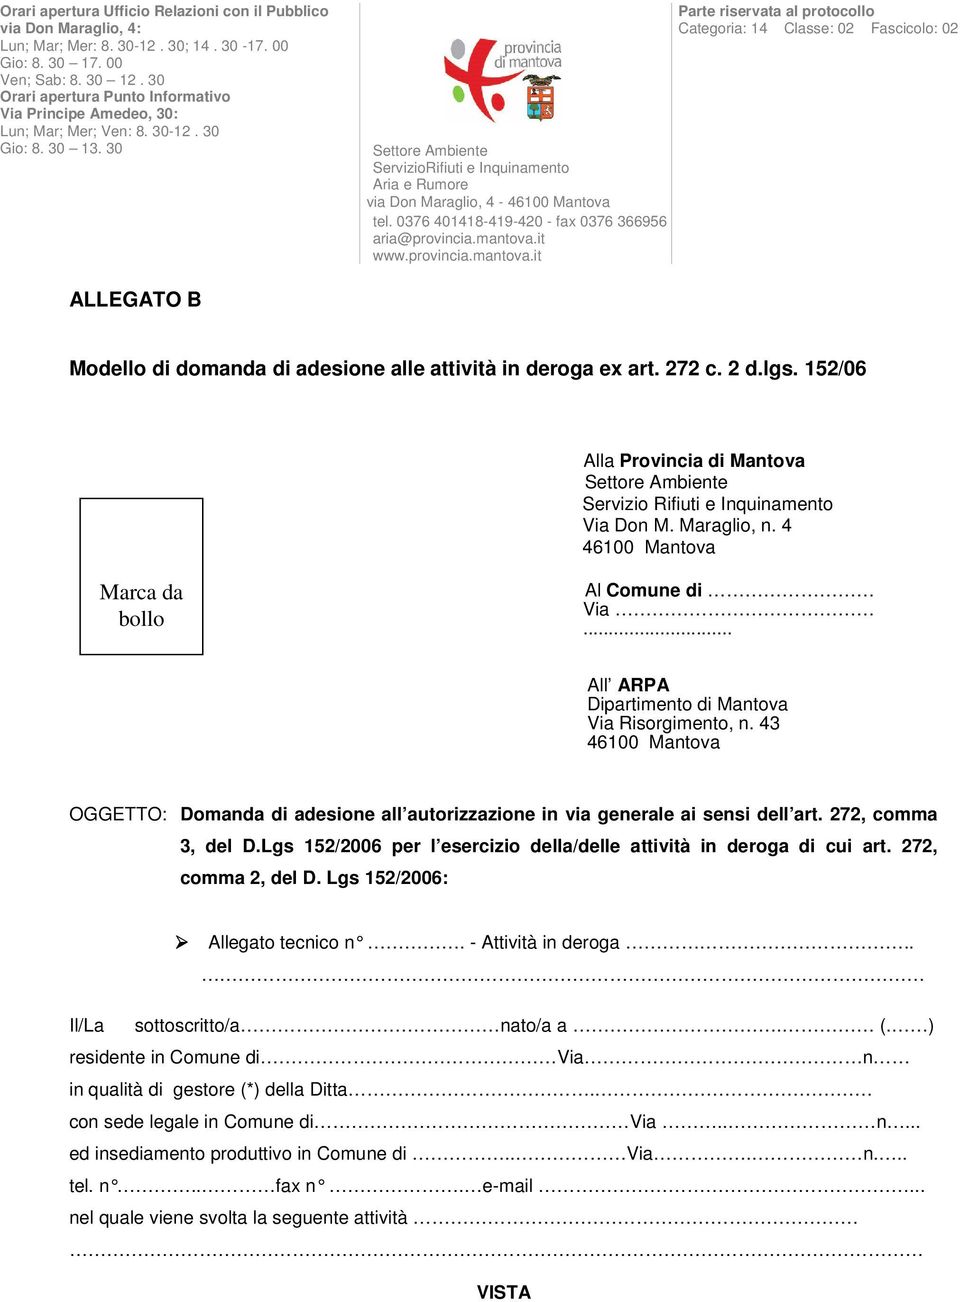 30 Settore Ambiente ServizioRifiuti e Inquinamento Aria e Rumore via Don Maraglio, 4-46100 Mantova tel. 0376 401418-419-420 - fax 0376 366956 aria@provincia.mantova.